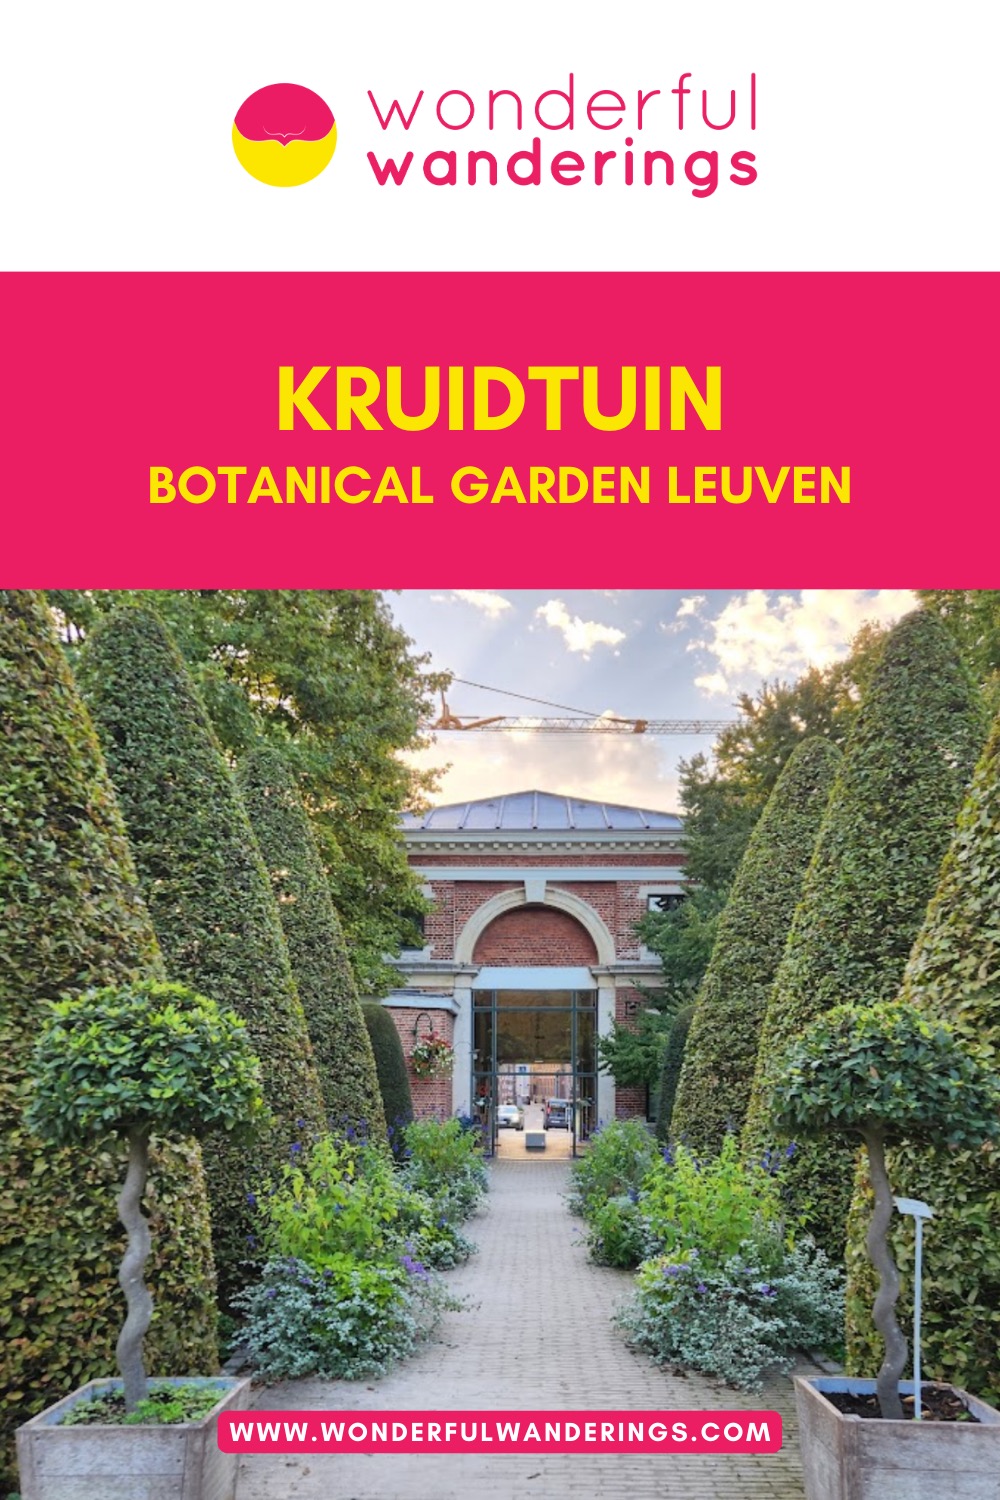 Kruidtuin Botanical Garden Leuven